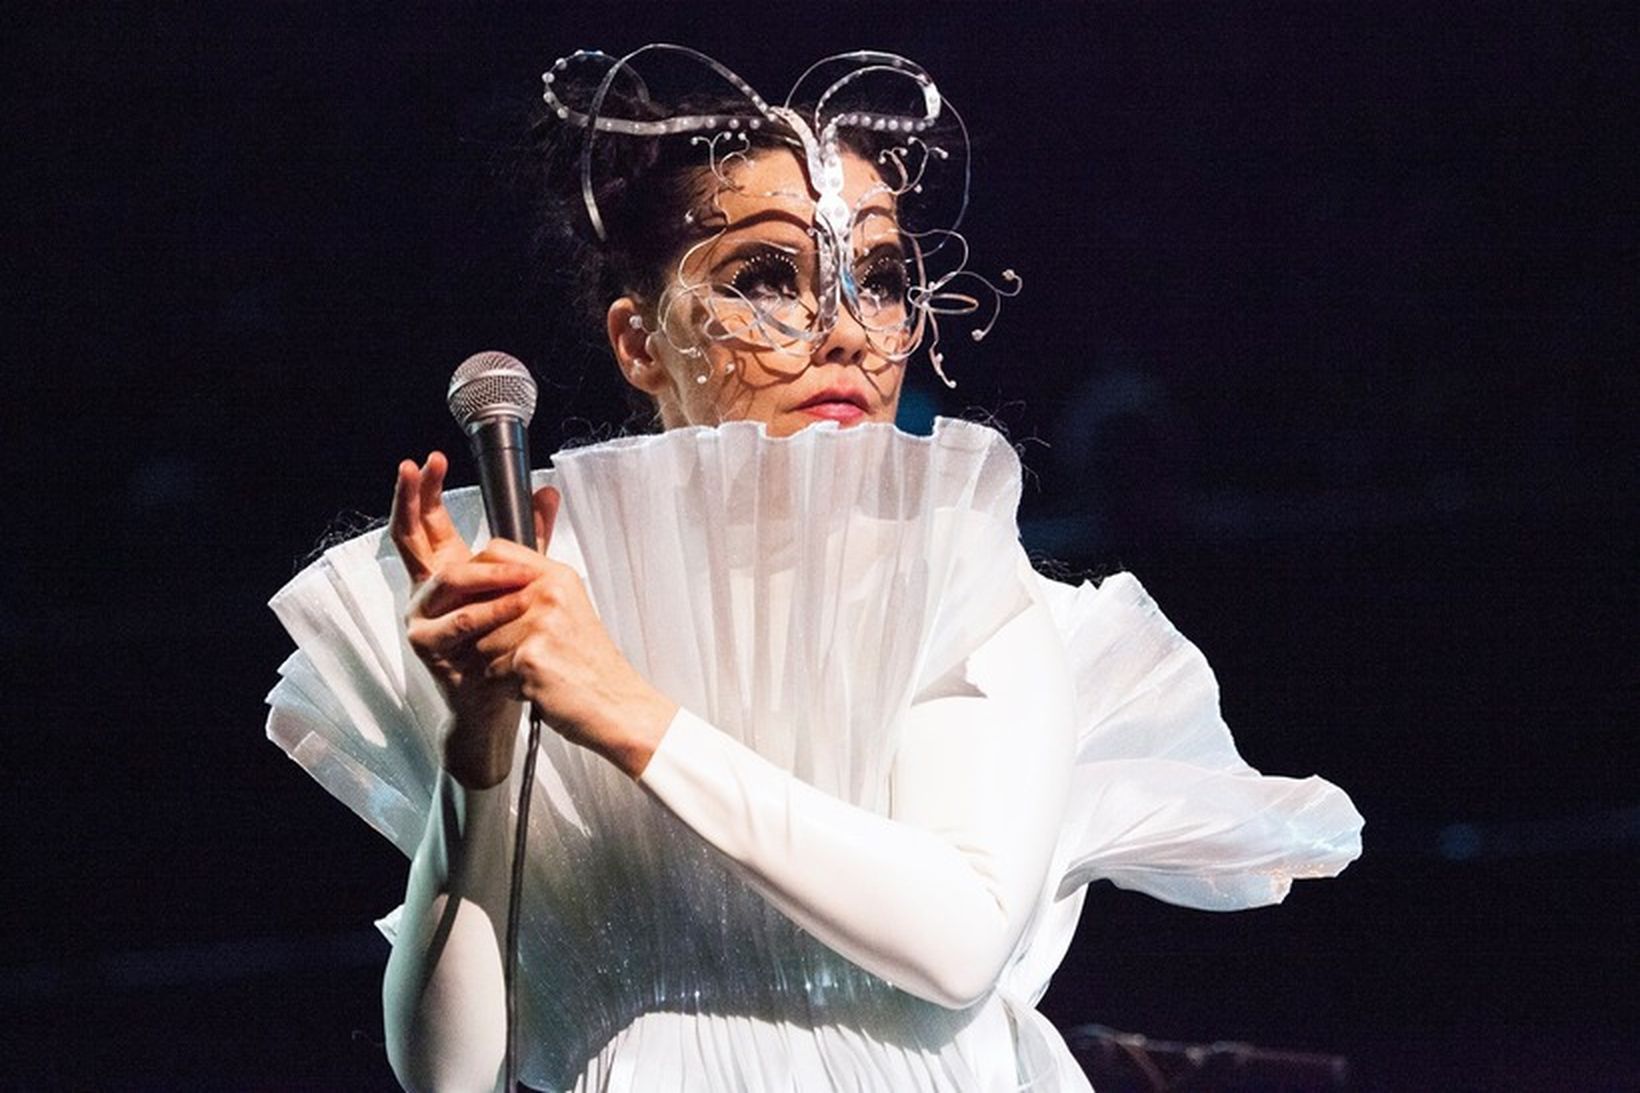 Björk kemur fram á tveimur tónleikum í byrjun apríl.